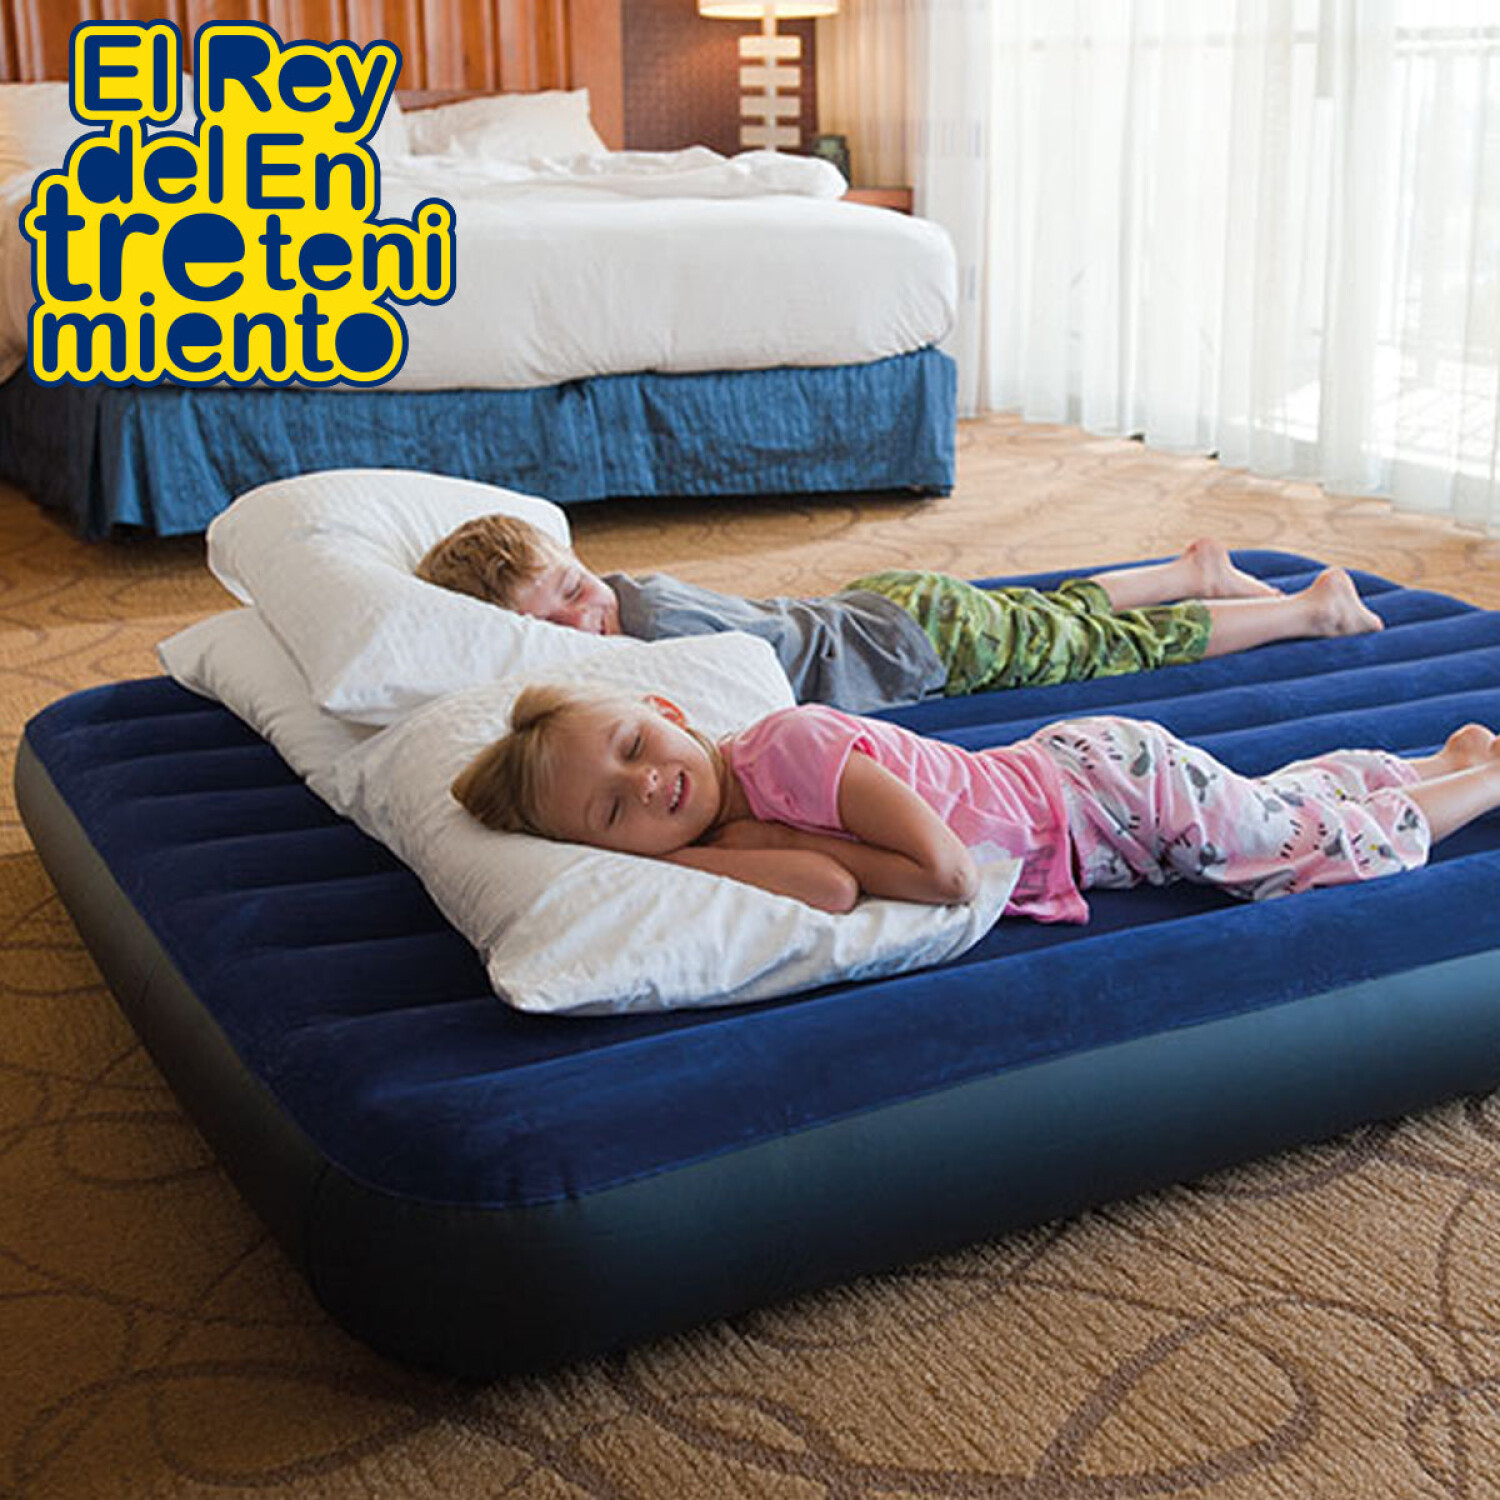 Colchón Inflable Intex 2p Camping +almohada +inflador - azul — El Rey del  entretenimiento